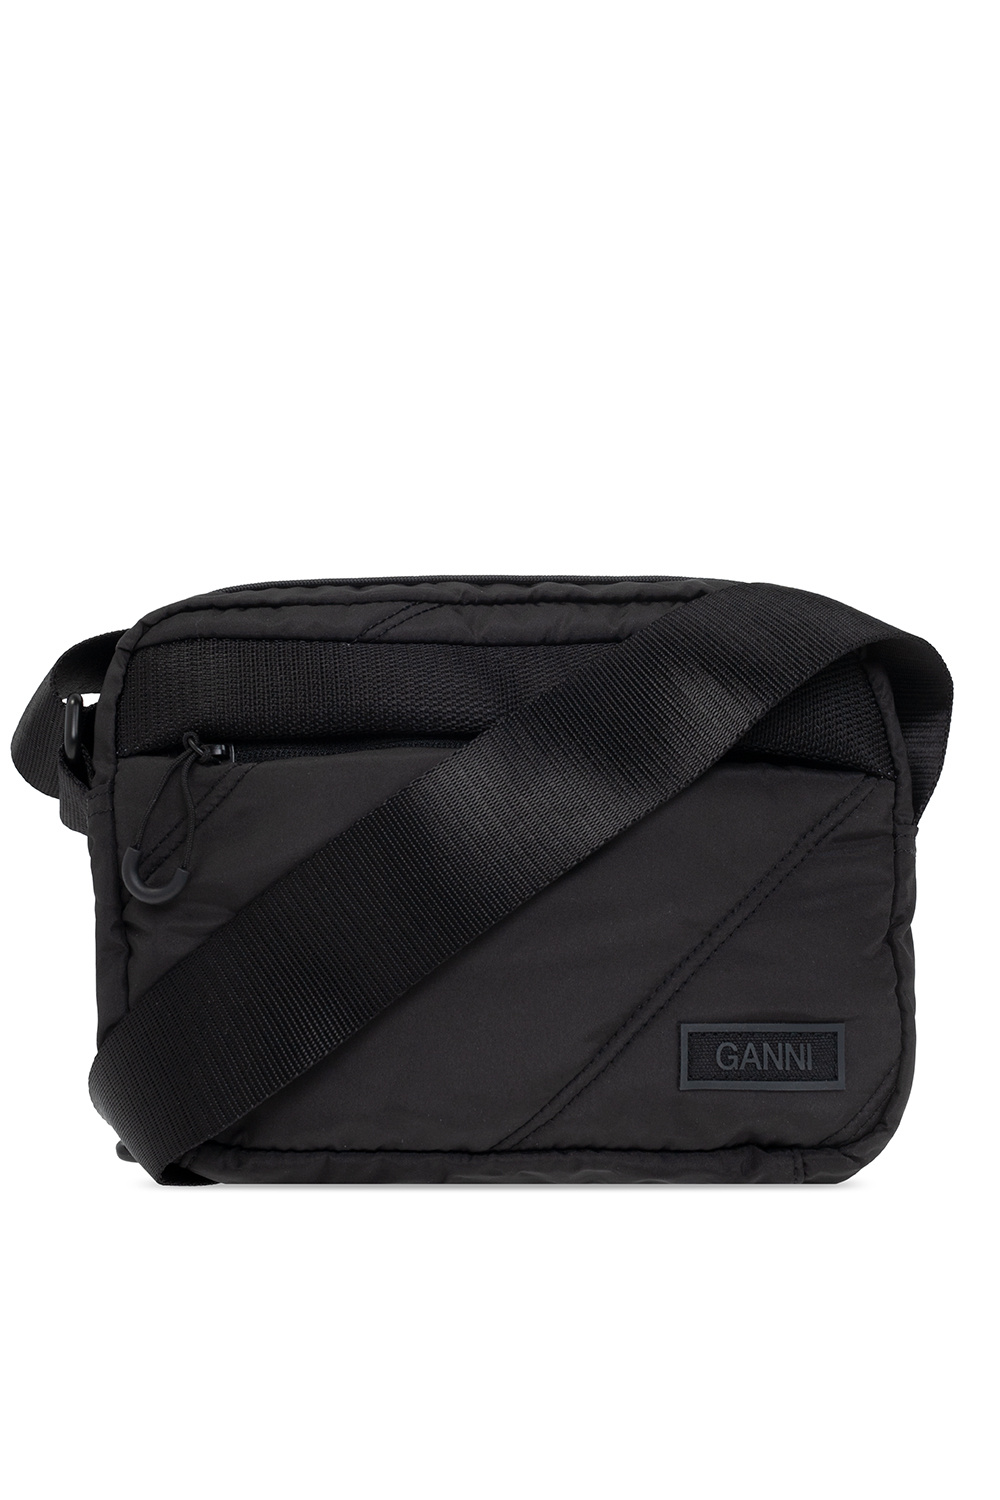 Ganni Quilted shoulder bag